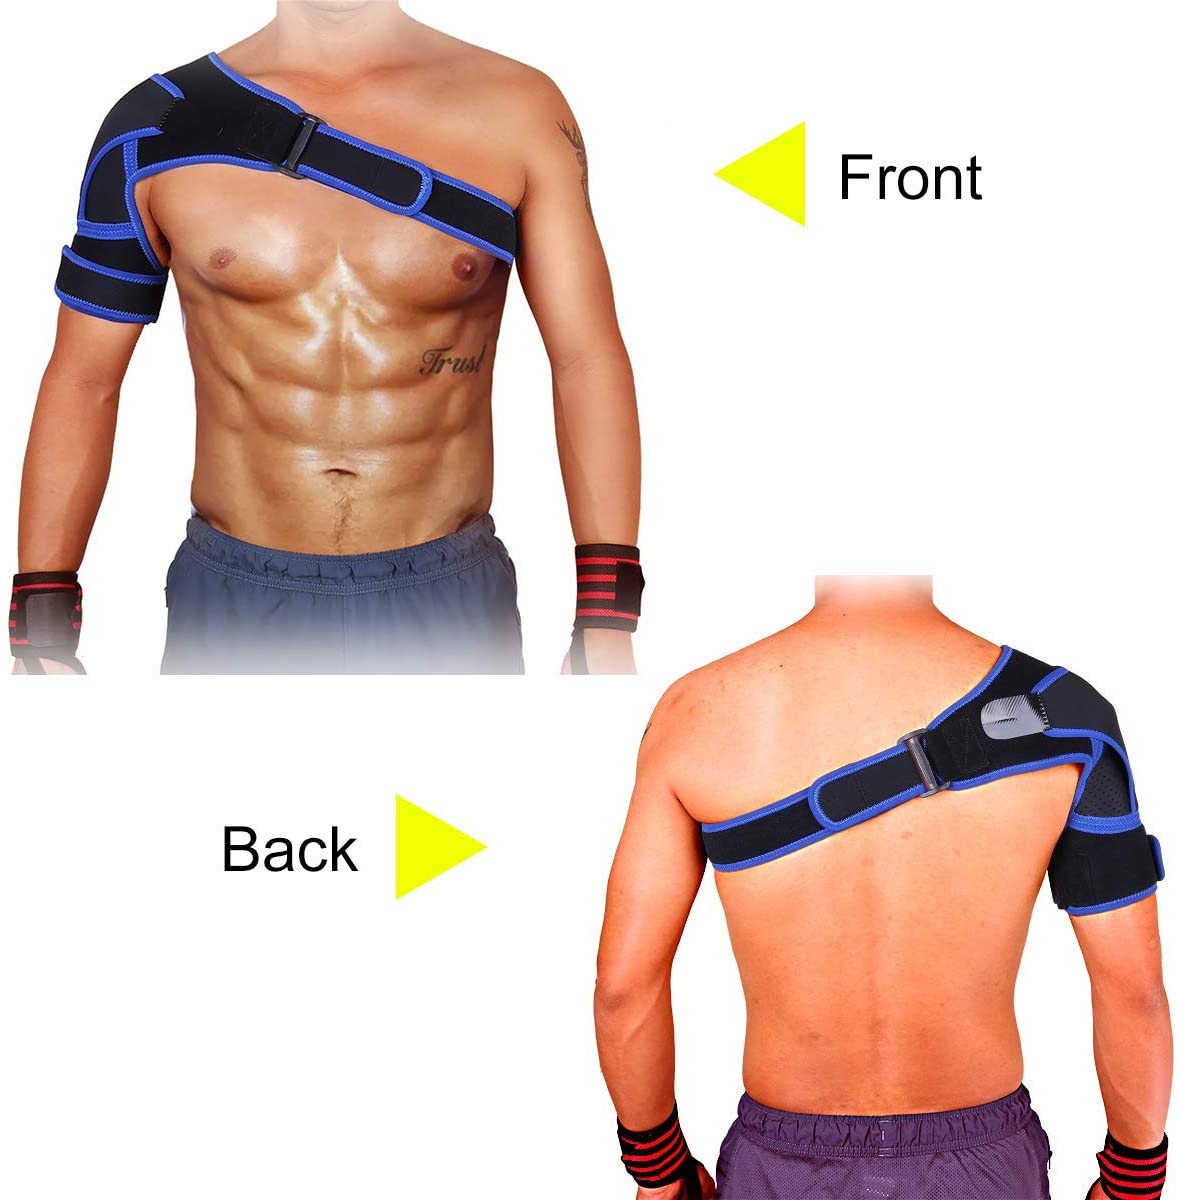 Adjustable Shoulder Brace for Men and Women